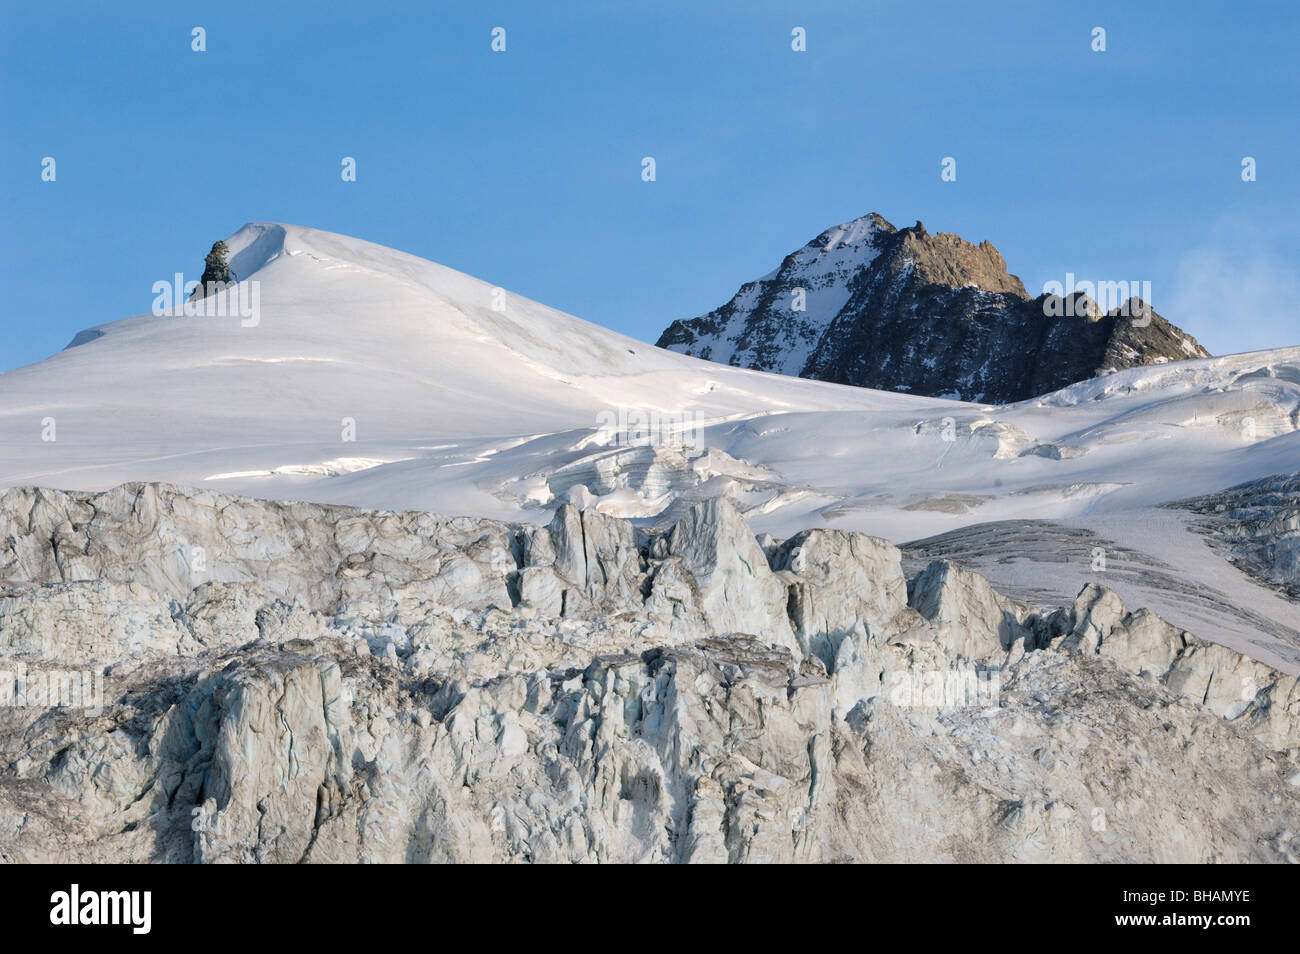 Séracs du glacier sur la montagne Grand cornier dans les Alpes Pennines / Walliser Alpen, Valais / Wallis (Suisse) Banque D'Images